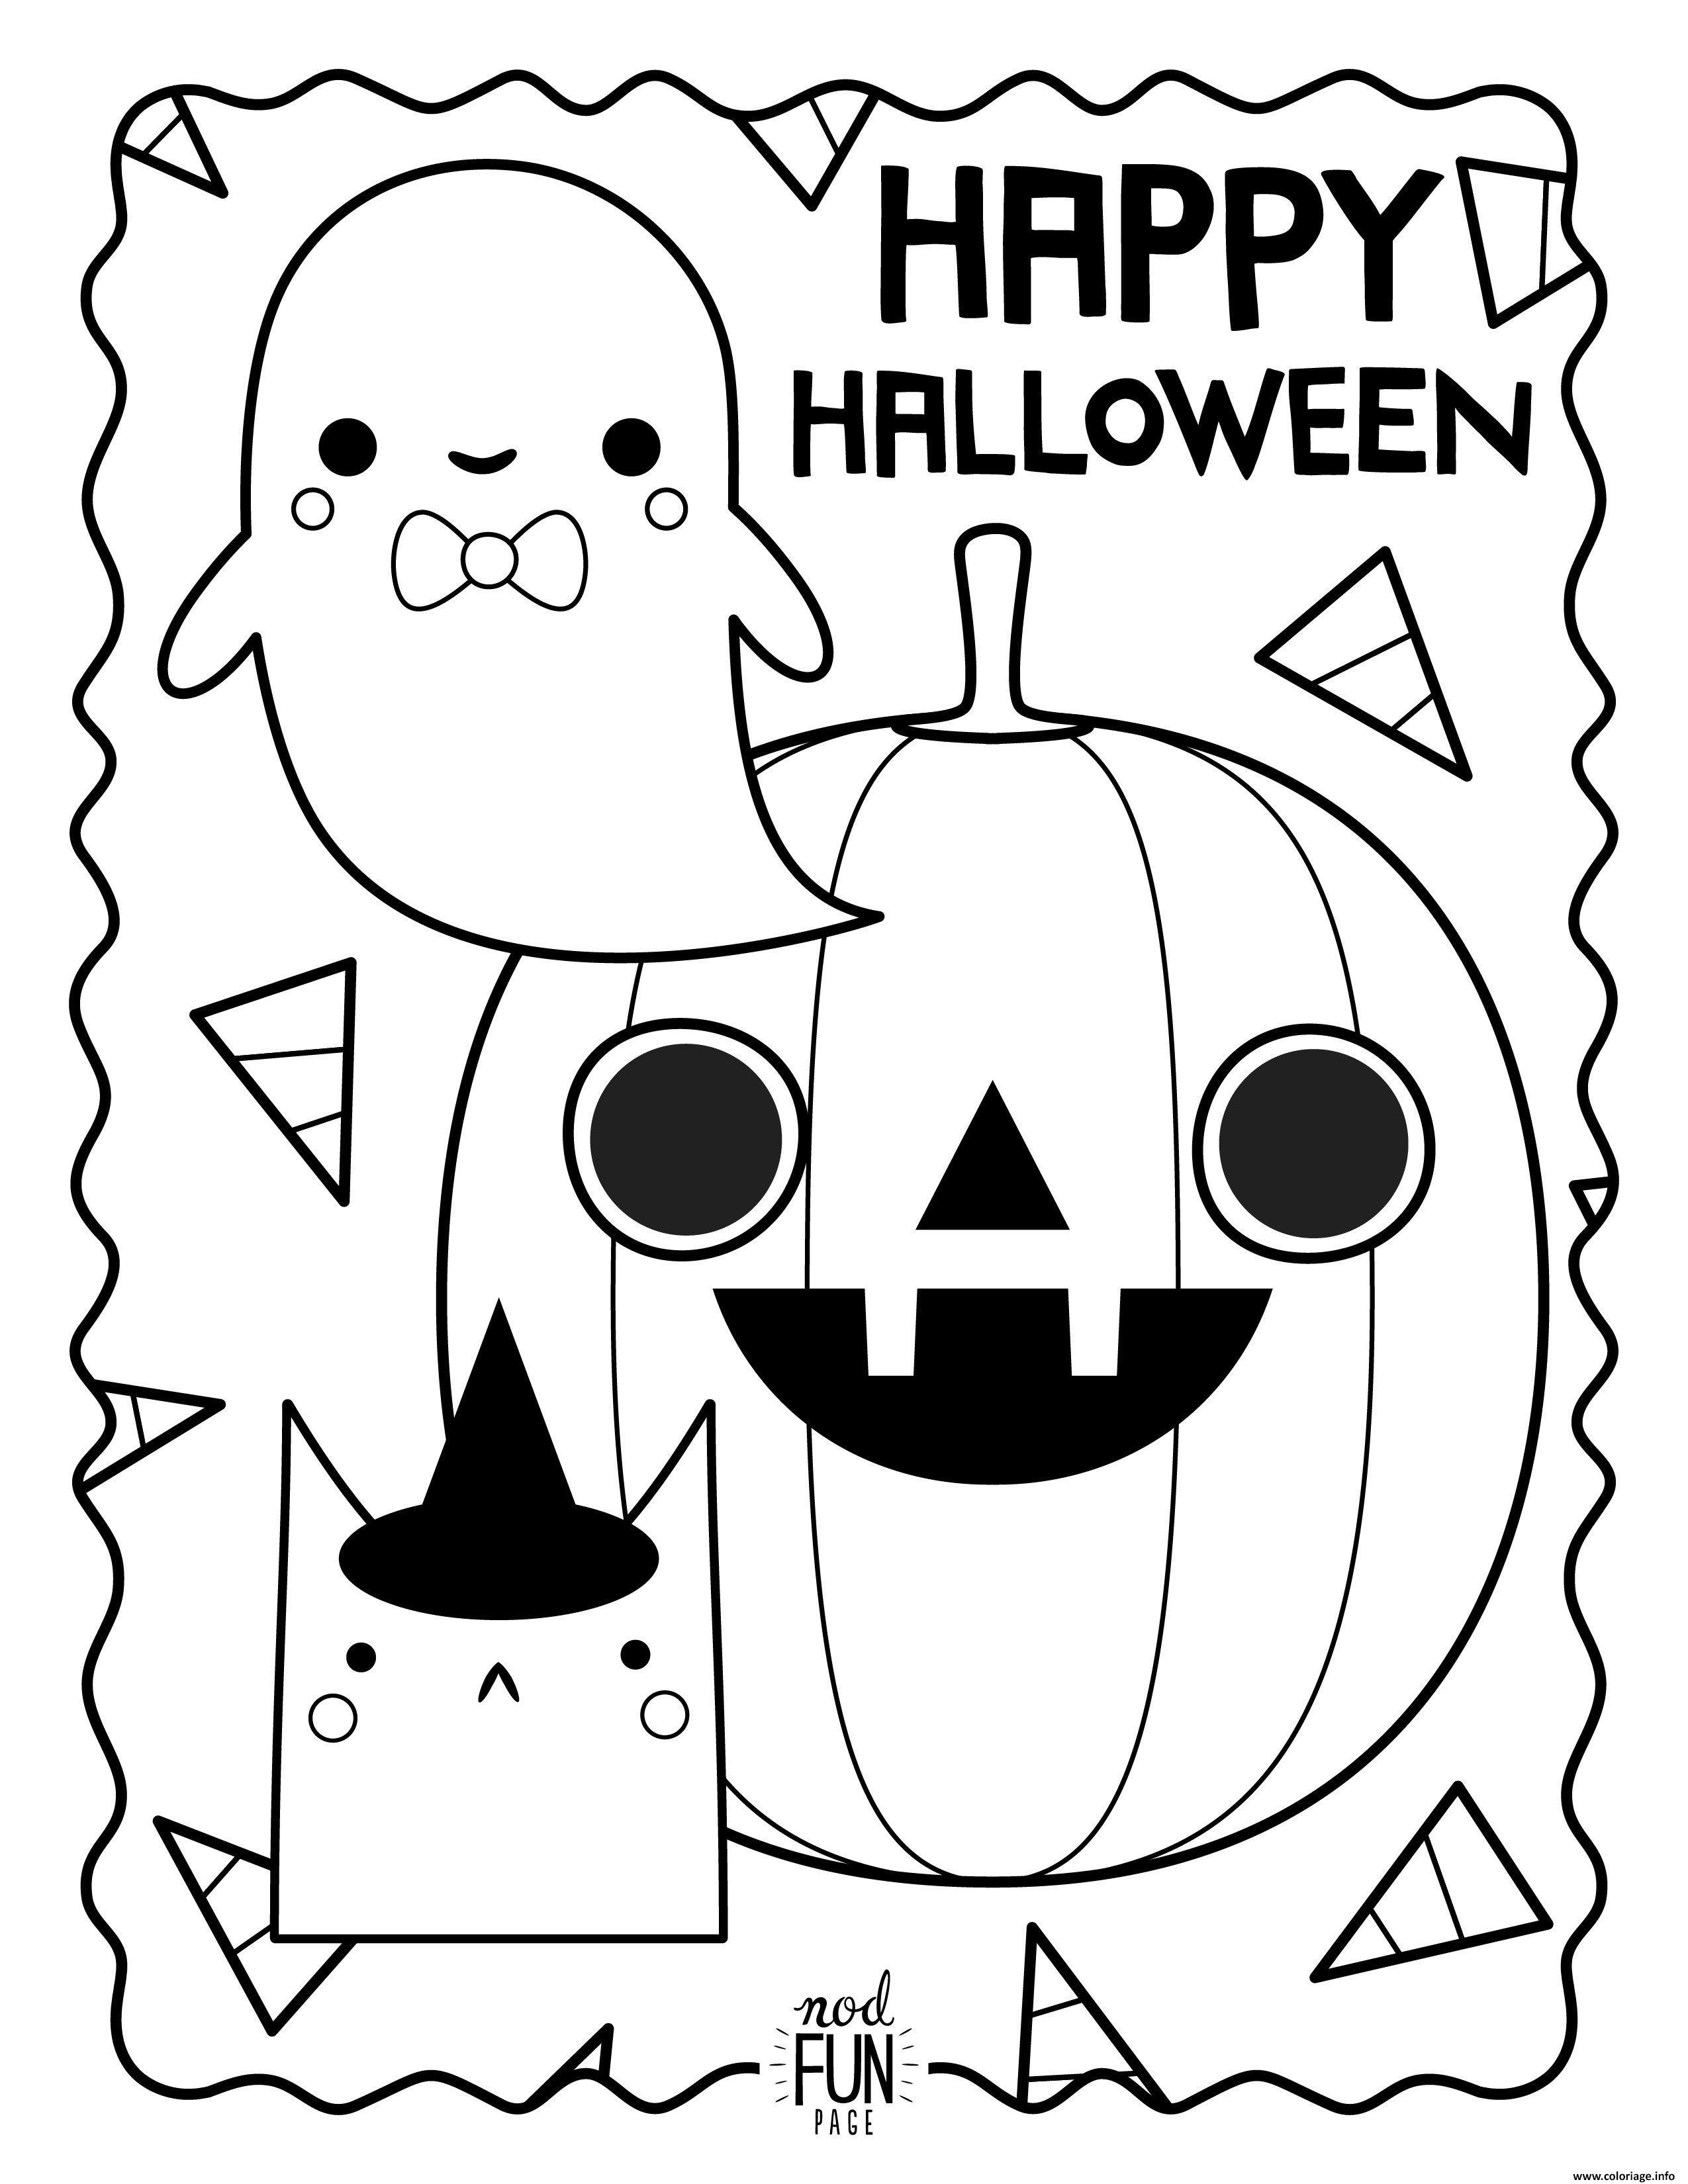 Dessin joyeuse halloween avec fantome citrouille et chat Coloriage Gratuit à Imprimer